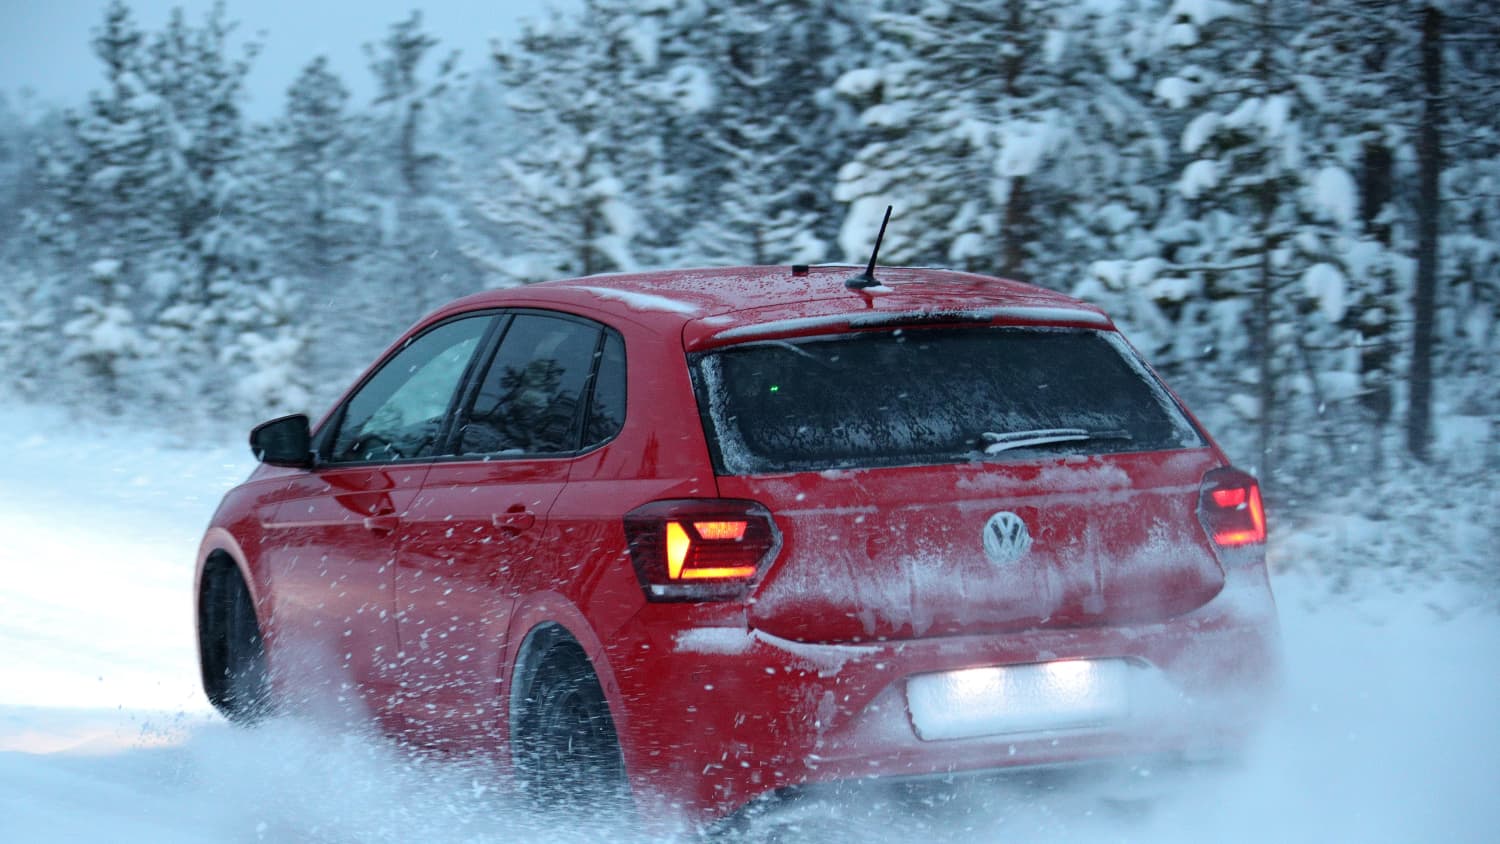 Audi A3, BMW 1er, VW Scirocco im Schnee-Test